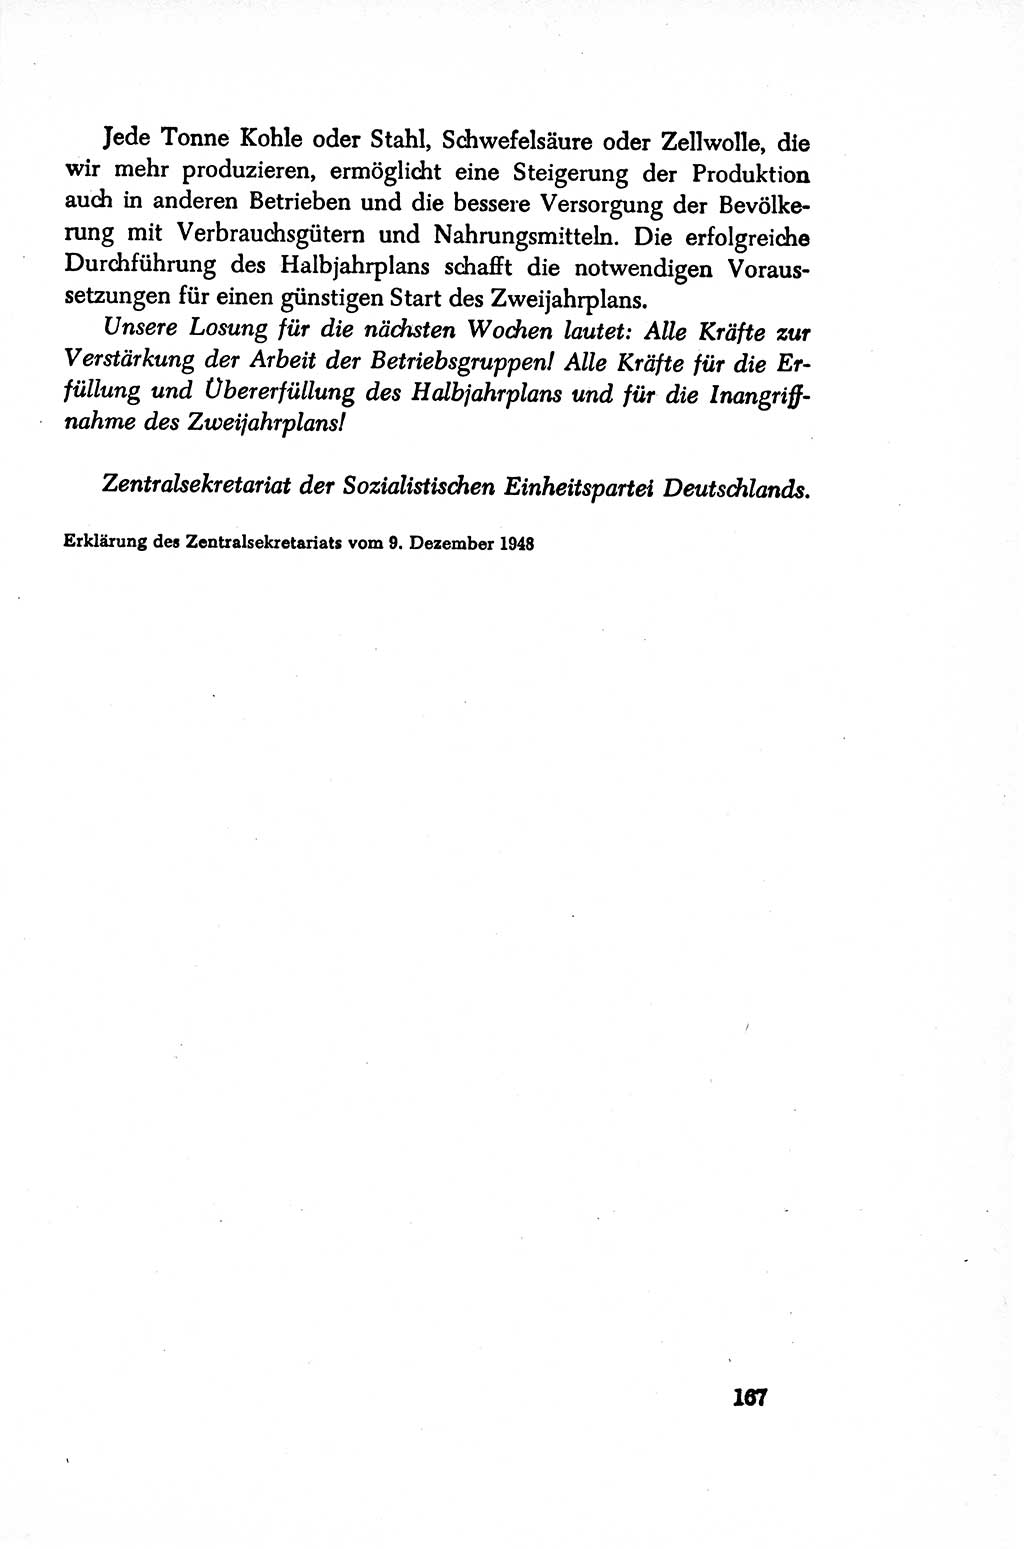 Dokumente der Sozialistischen Einheitspartei Deutschlands (SED) [Sowjetische Besatzungszone (SBZ) Deutschlands/Deutsche Demokratische Republik (DDR)] 1948-1950, Seite 167 (Dok. SED SBZ Dtl. DDR 1948-1950, S. 167)